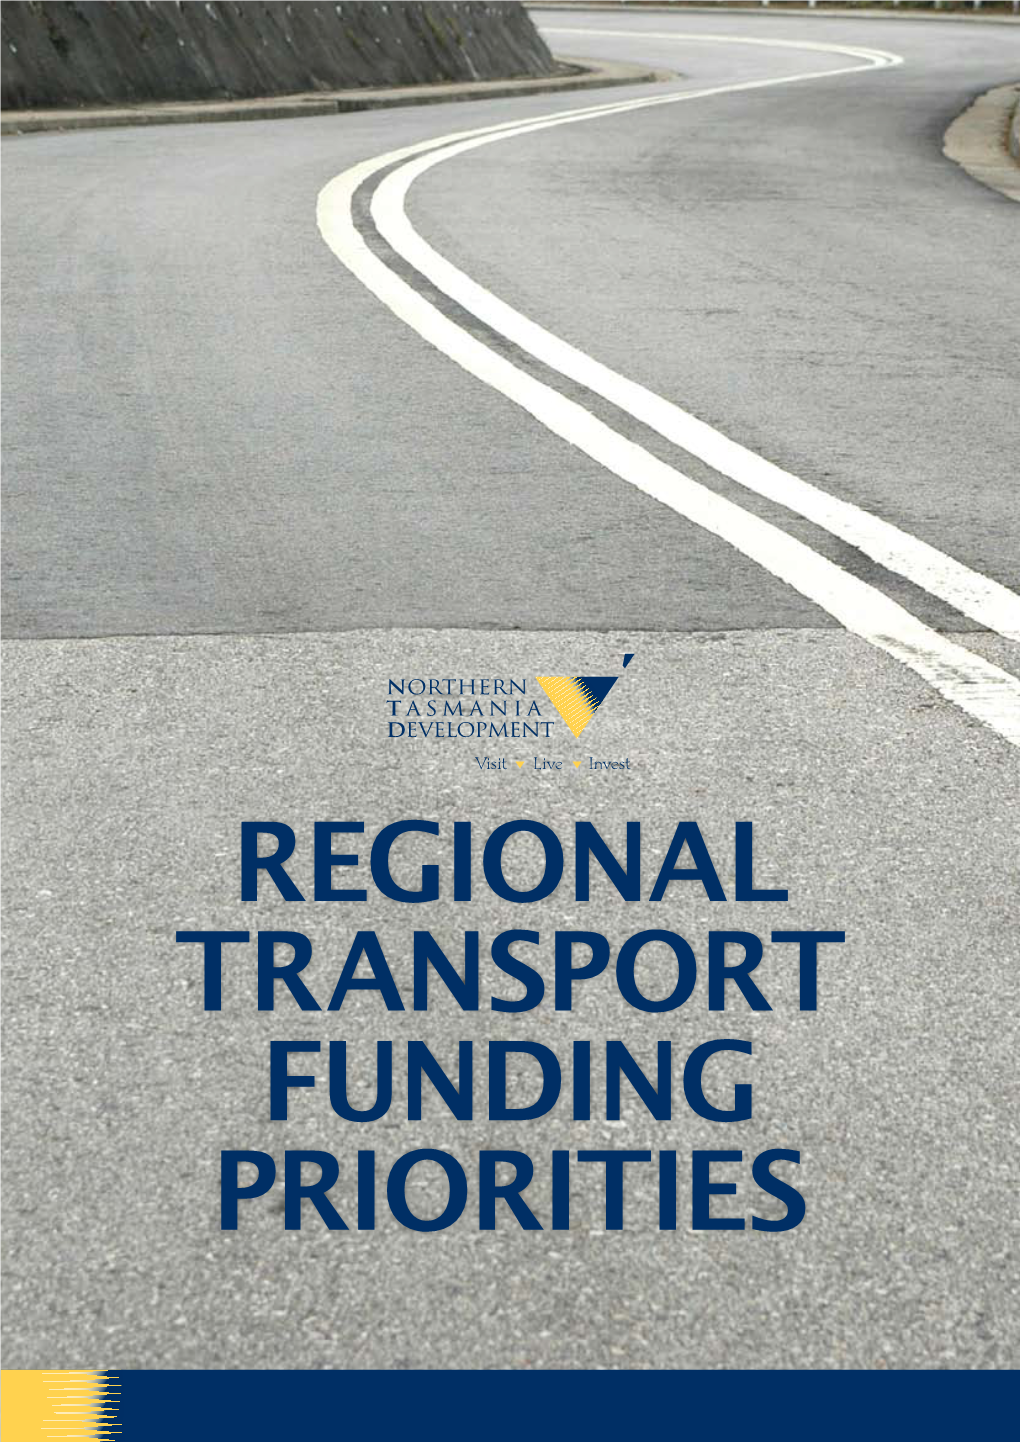 Regional Transport Funding Priorities Overview